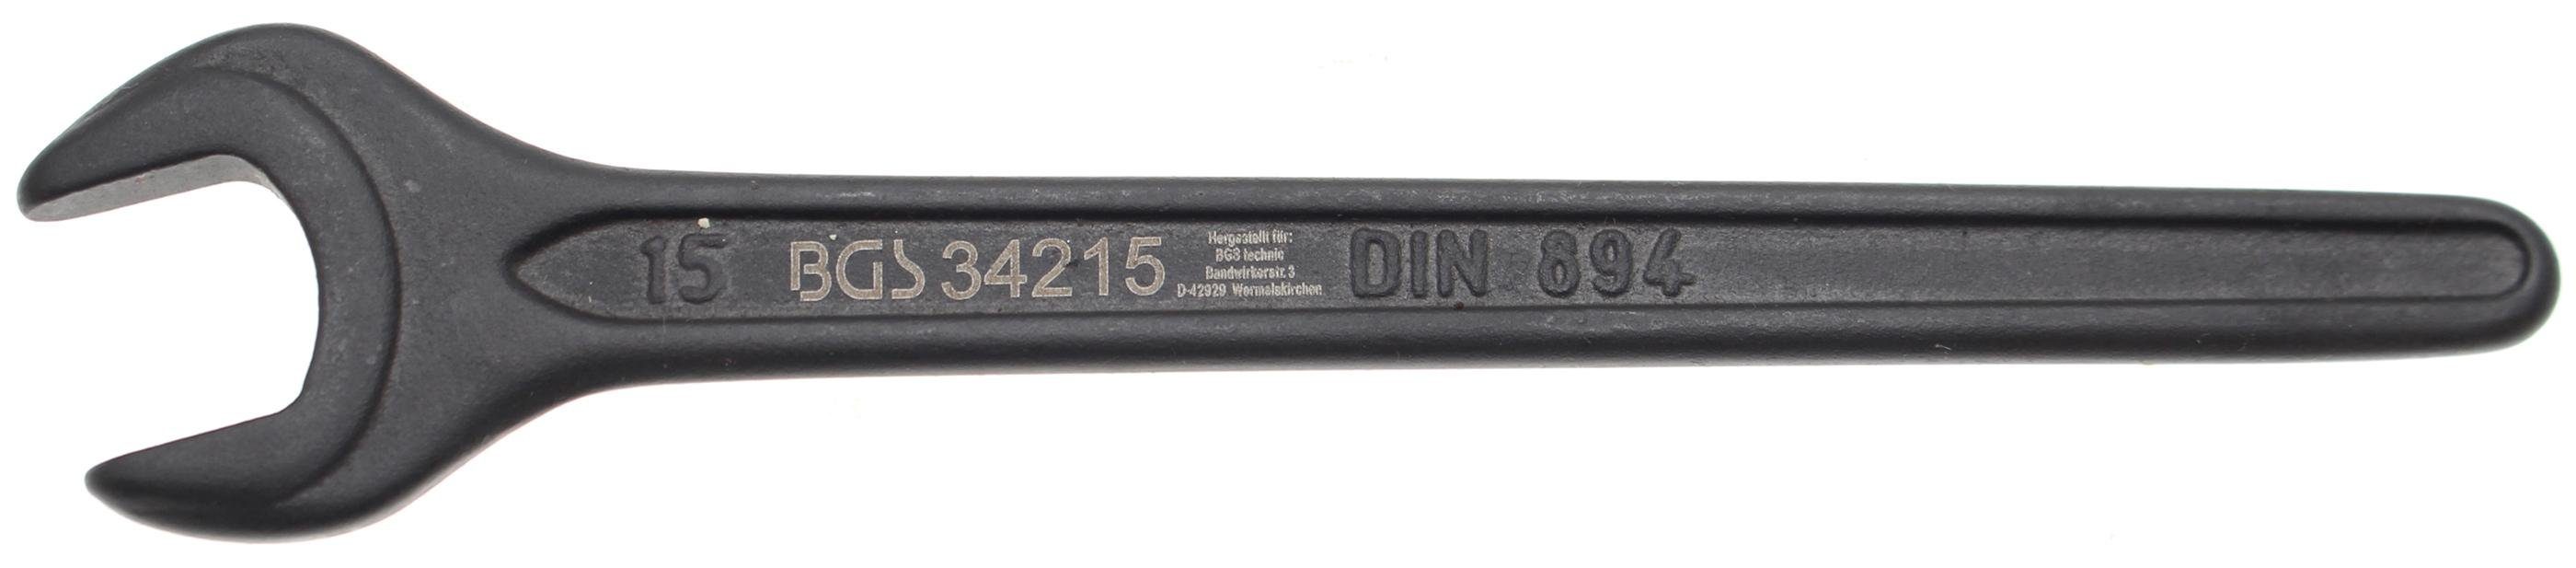 Historisch günstigster Preis BGS technic SW Maulschlüssel DIN Einmaulschlüssel, mm 15 894